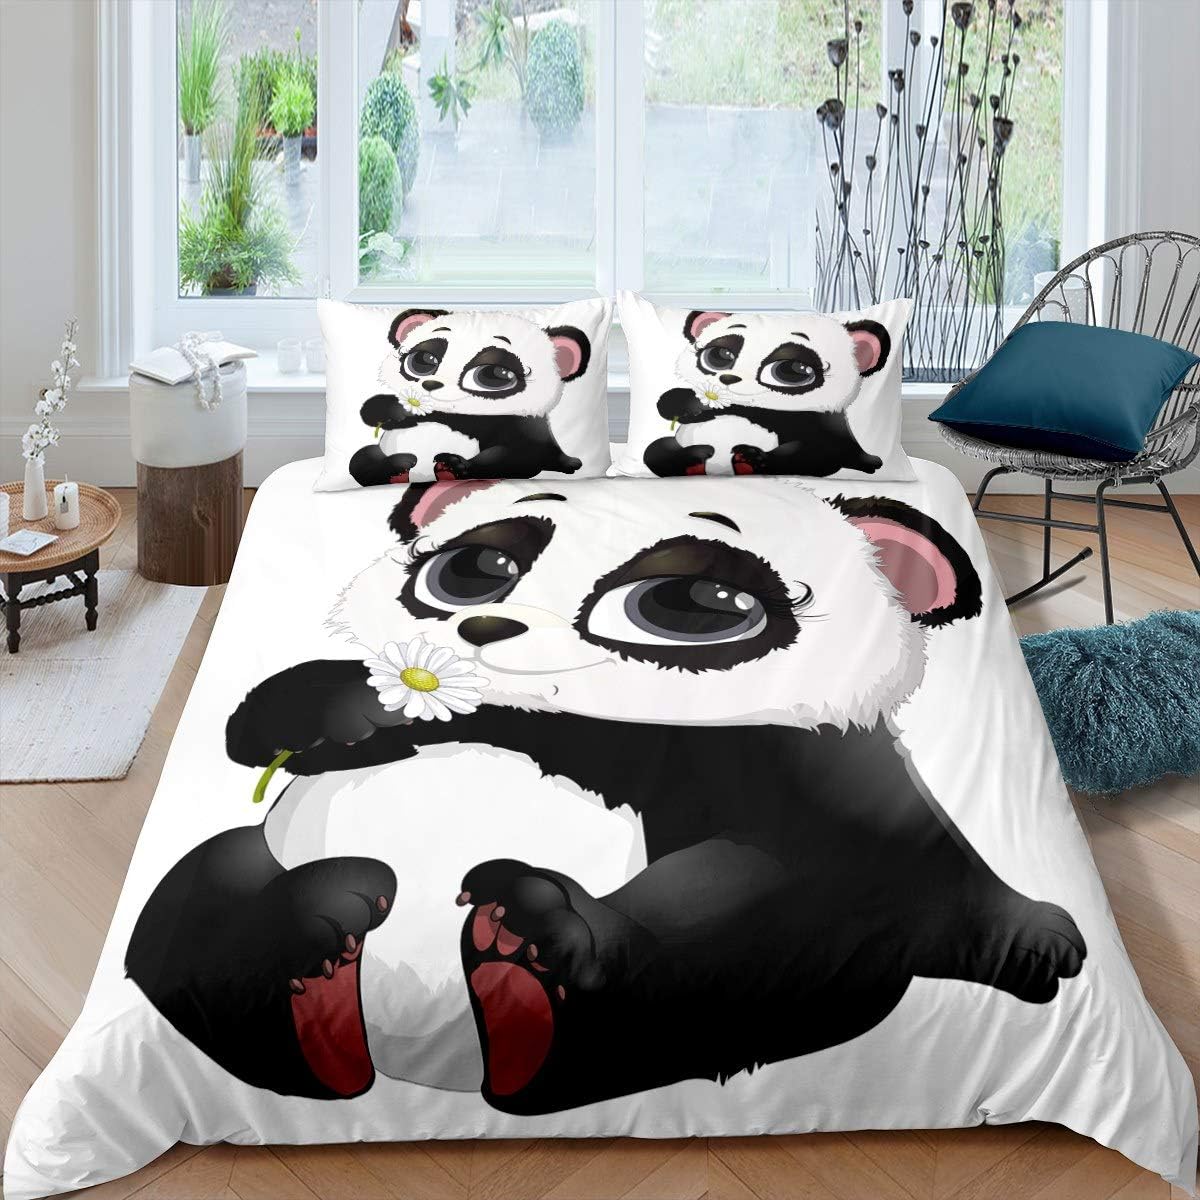 Juego de sábanas CVHouse Kawaii Panda tamaño queen, juegos de cama Kawaii  Cute Panda para niñas, niños y adolescentes, bonitos juegos de sábanas  bajeras Panda, 1 sábana encimera y 1 sábana bajera